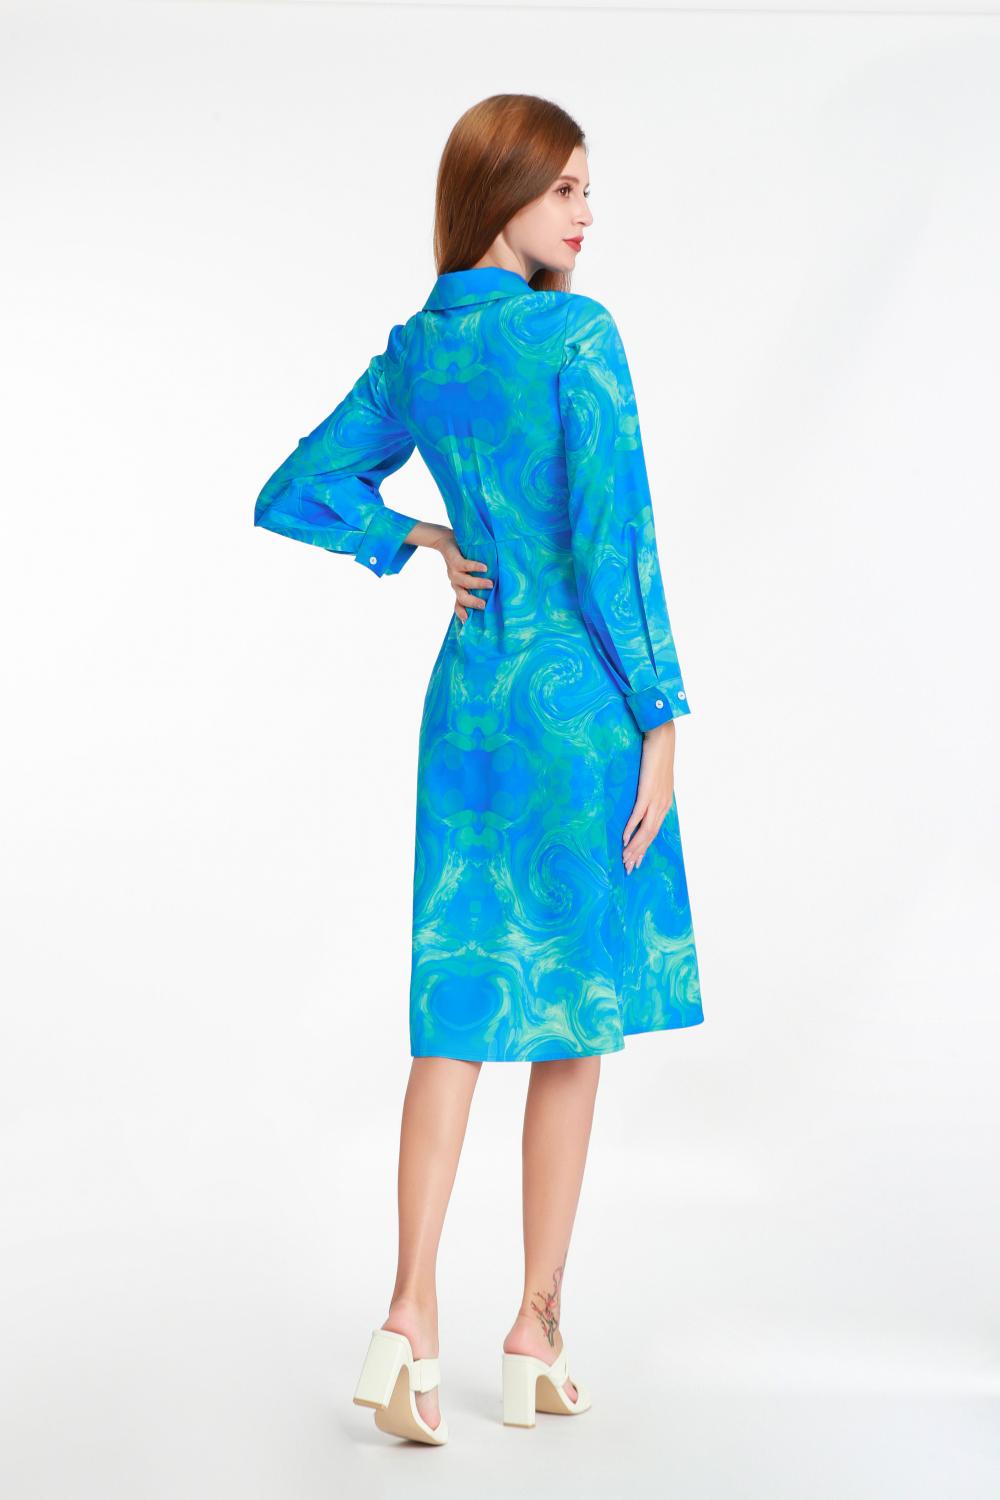 Hemdstyle-Langarm-gedrucktes Kleid